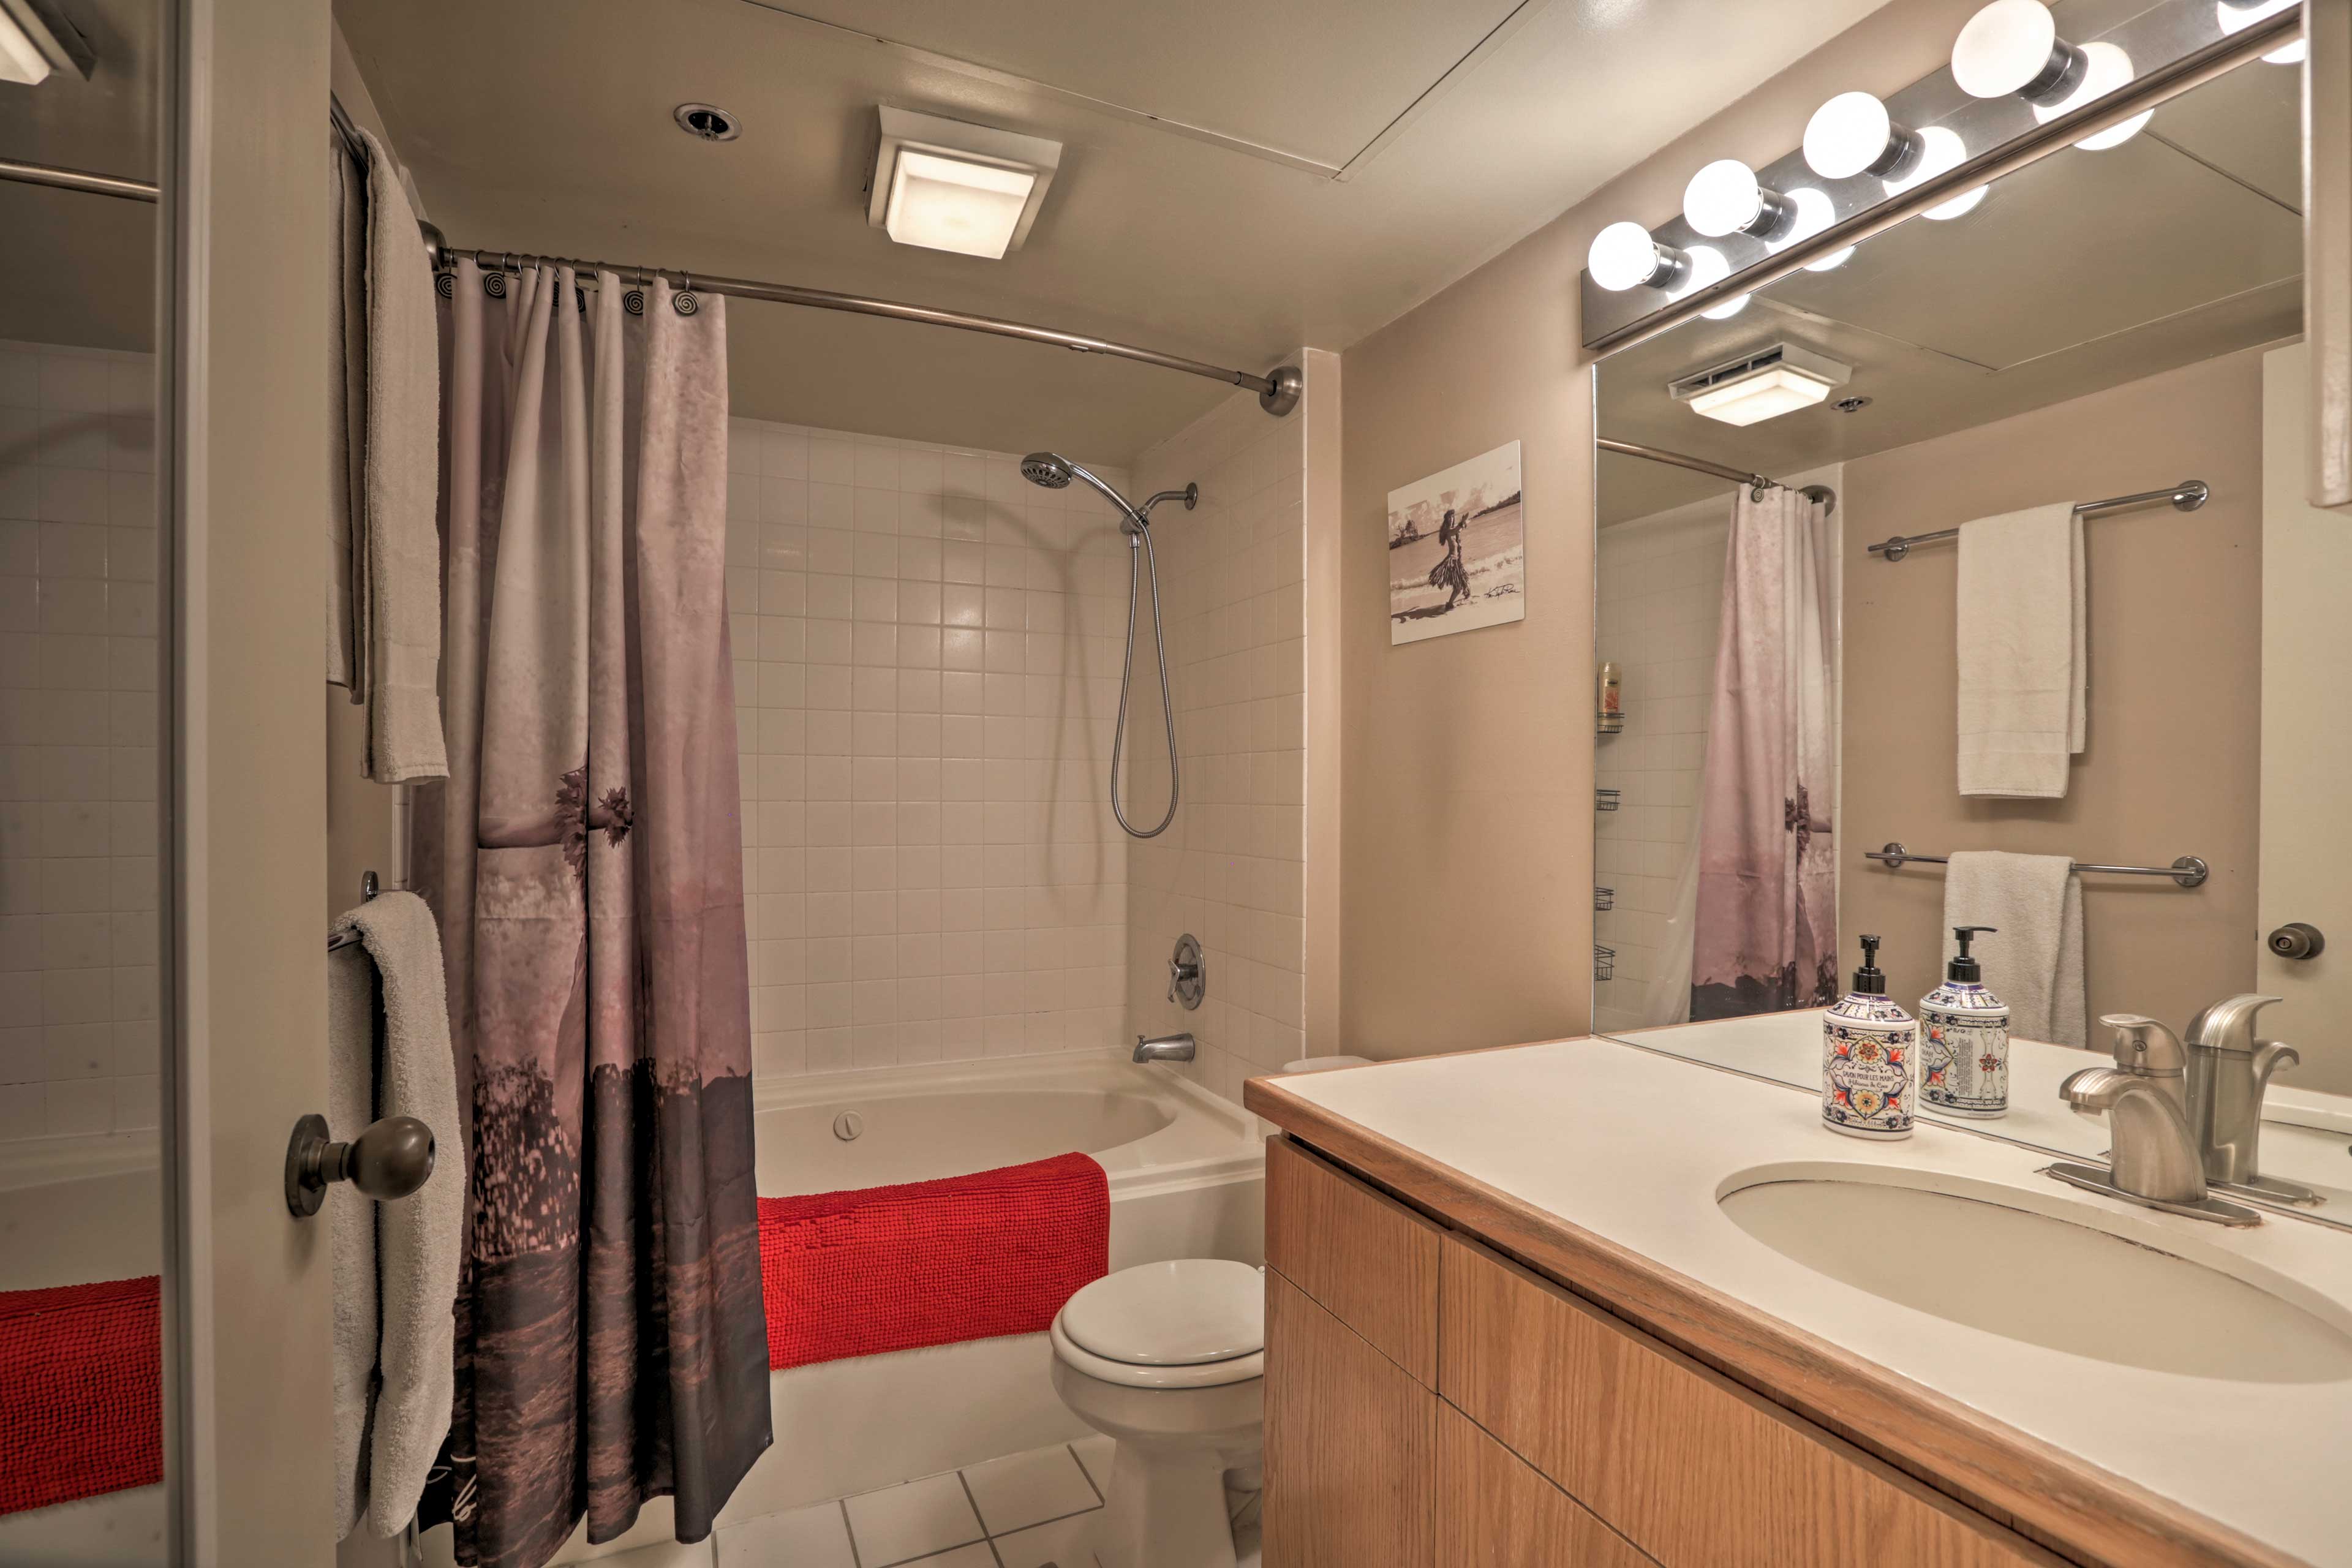 The en-suite bathroom has a shower/tub combo.